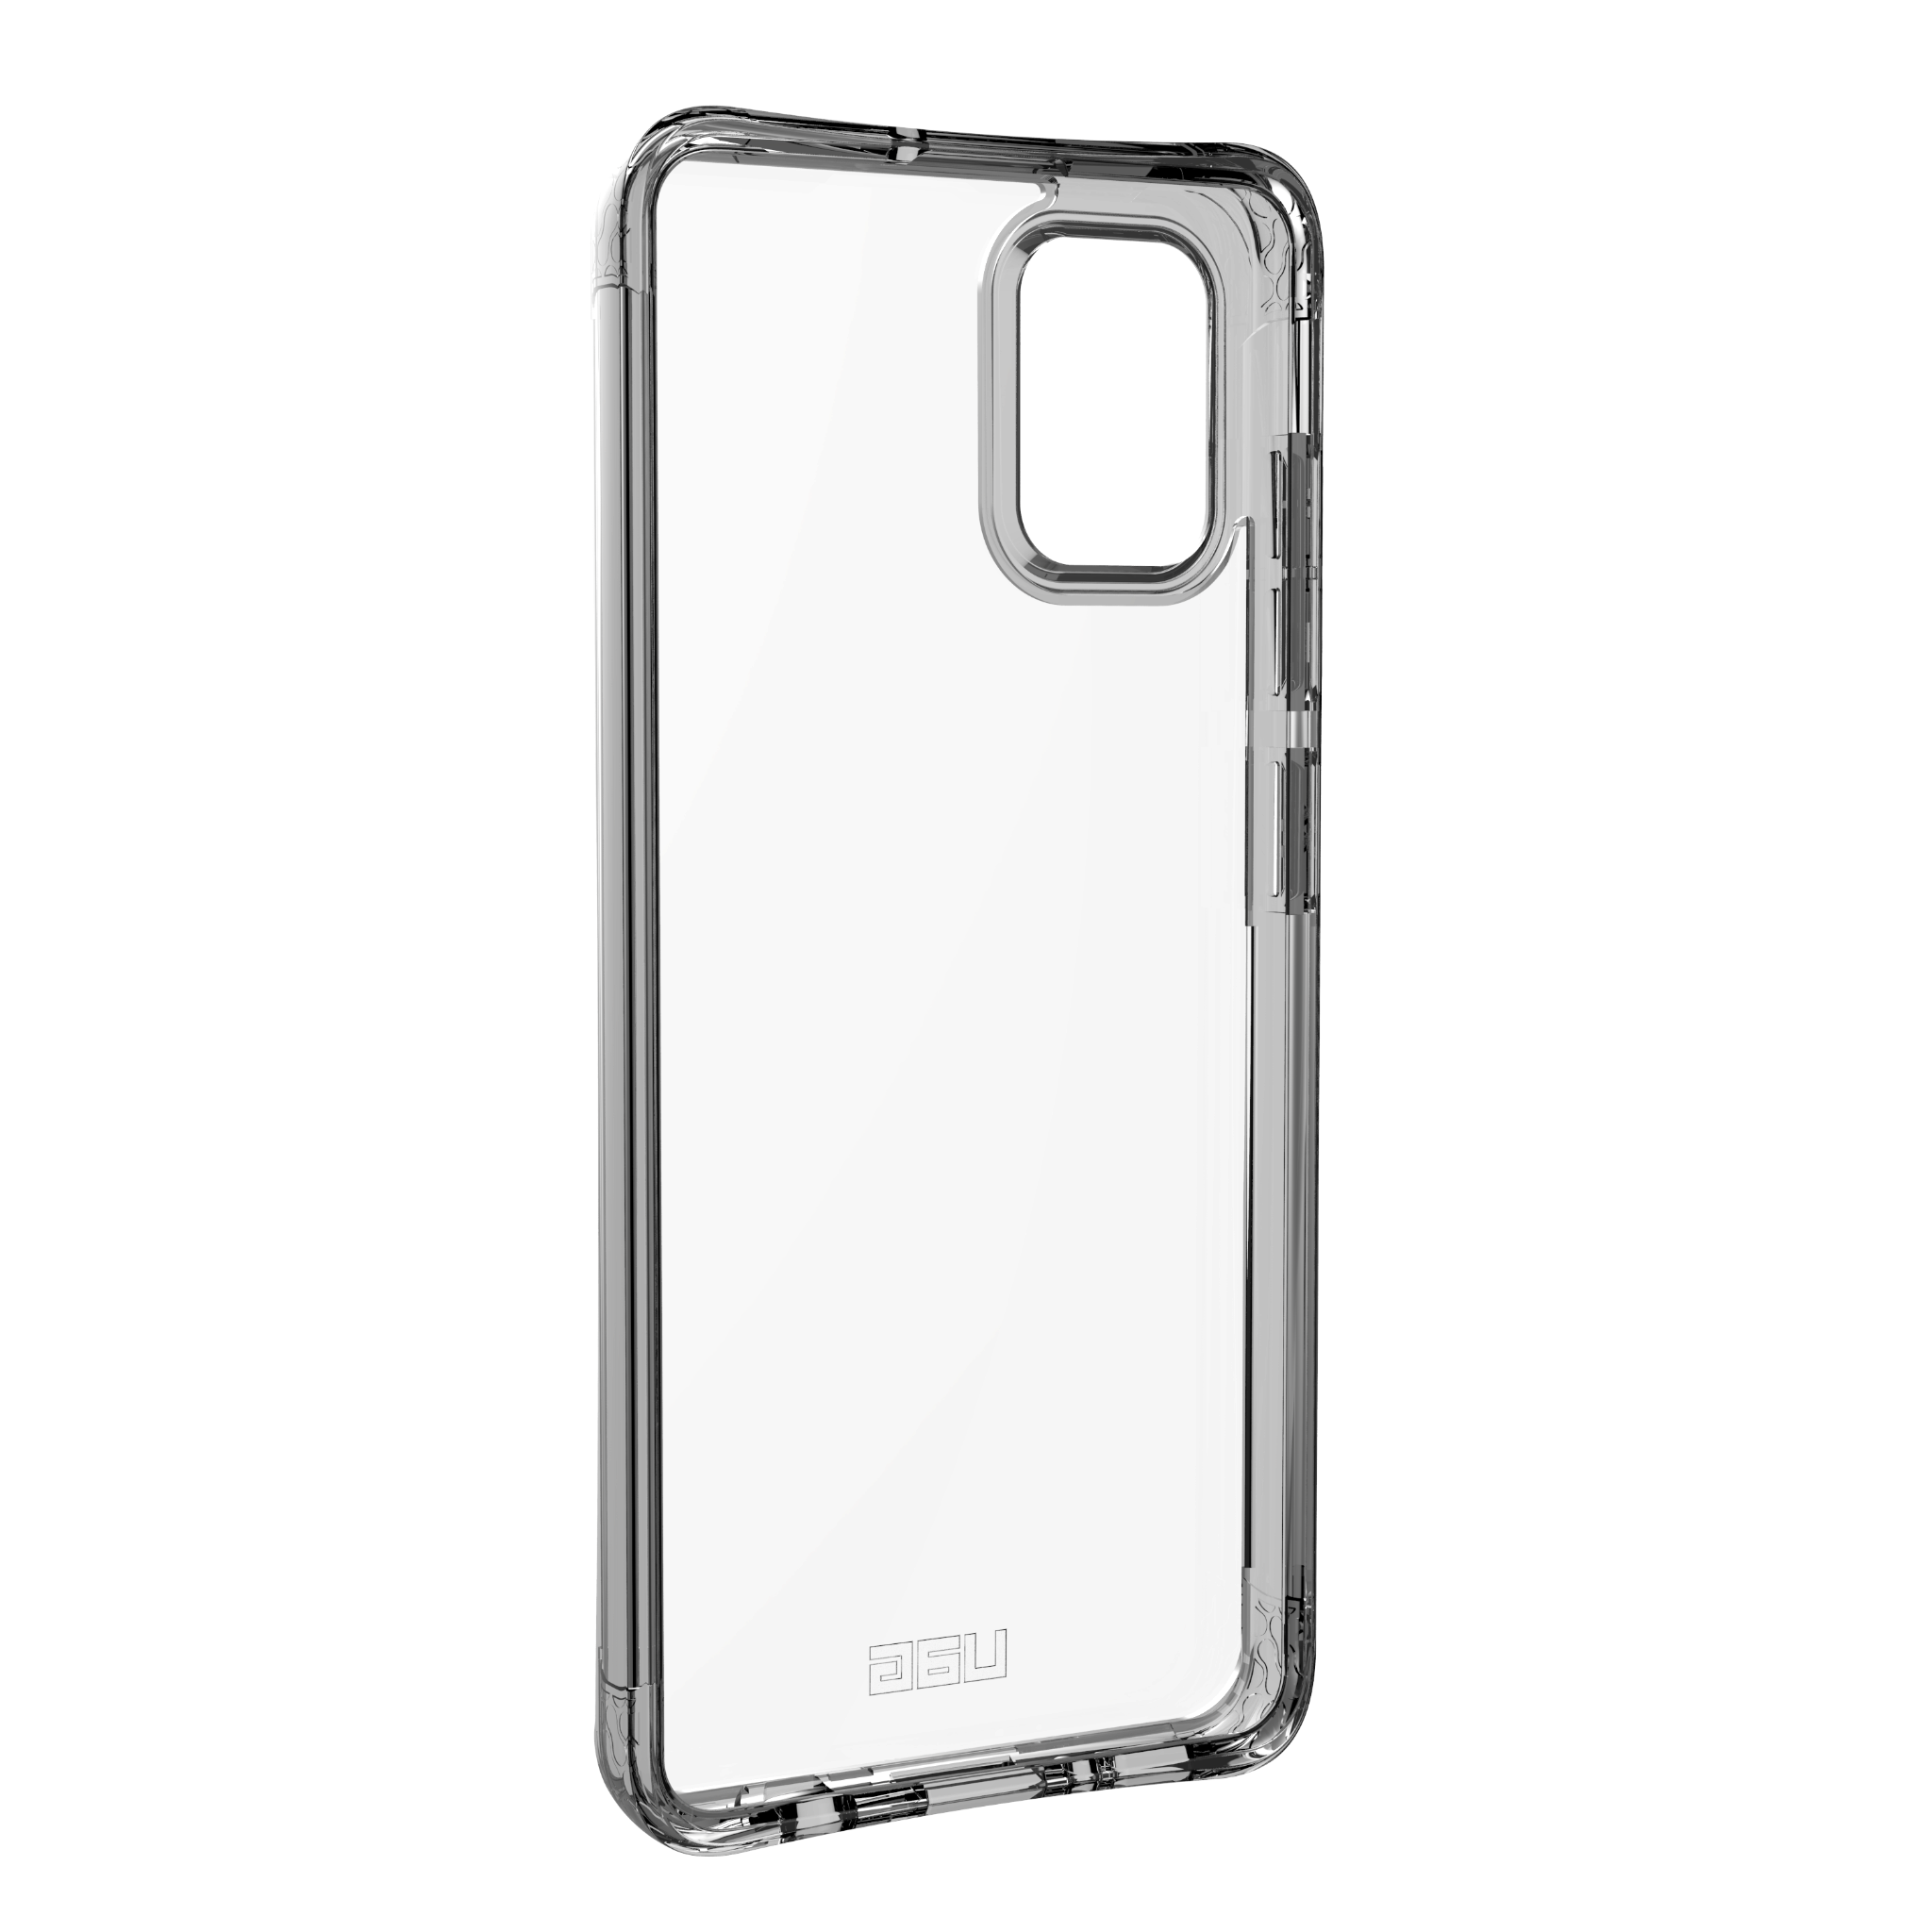  Ốp lưng Plyo cho Samsung Galaxy A51 